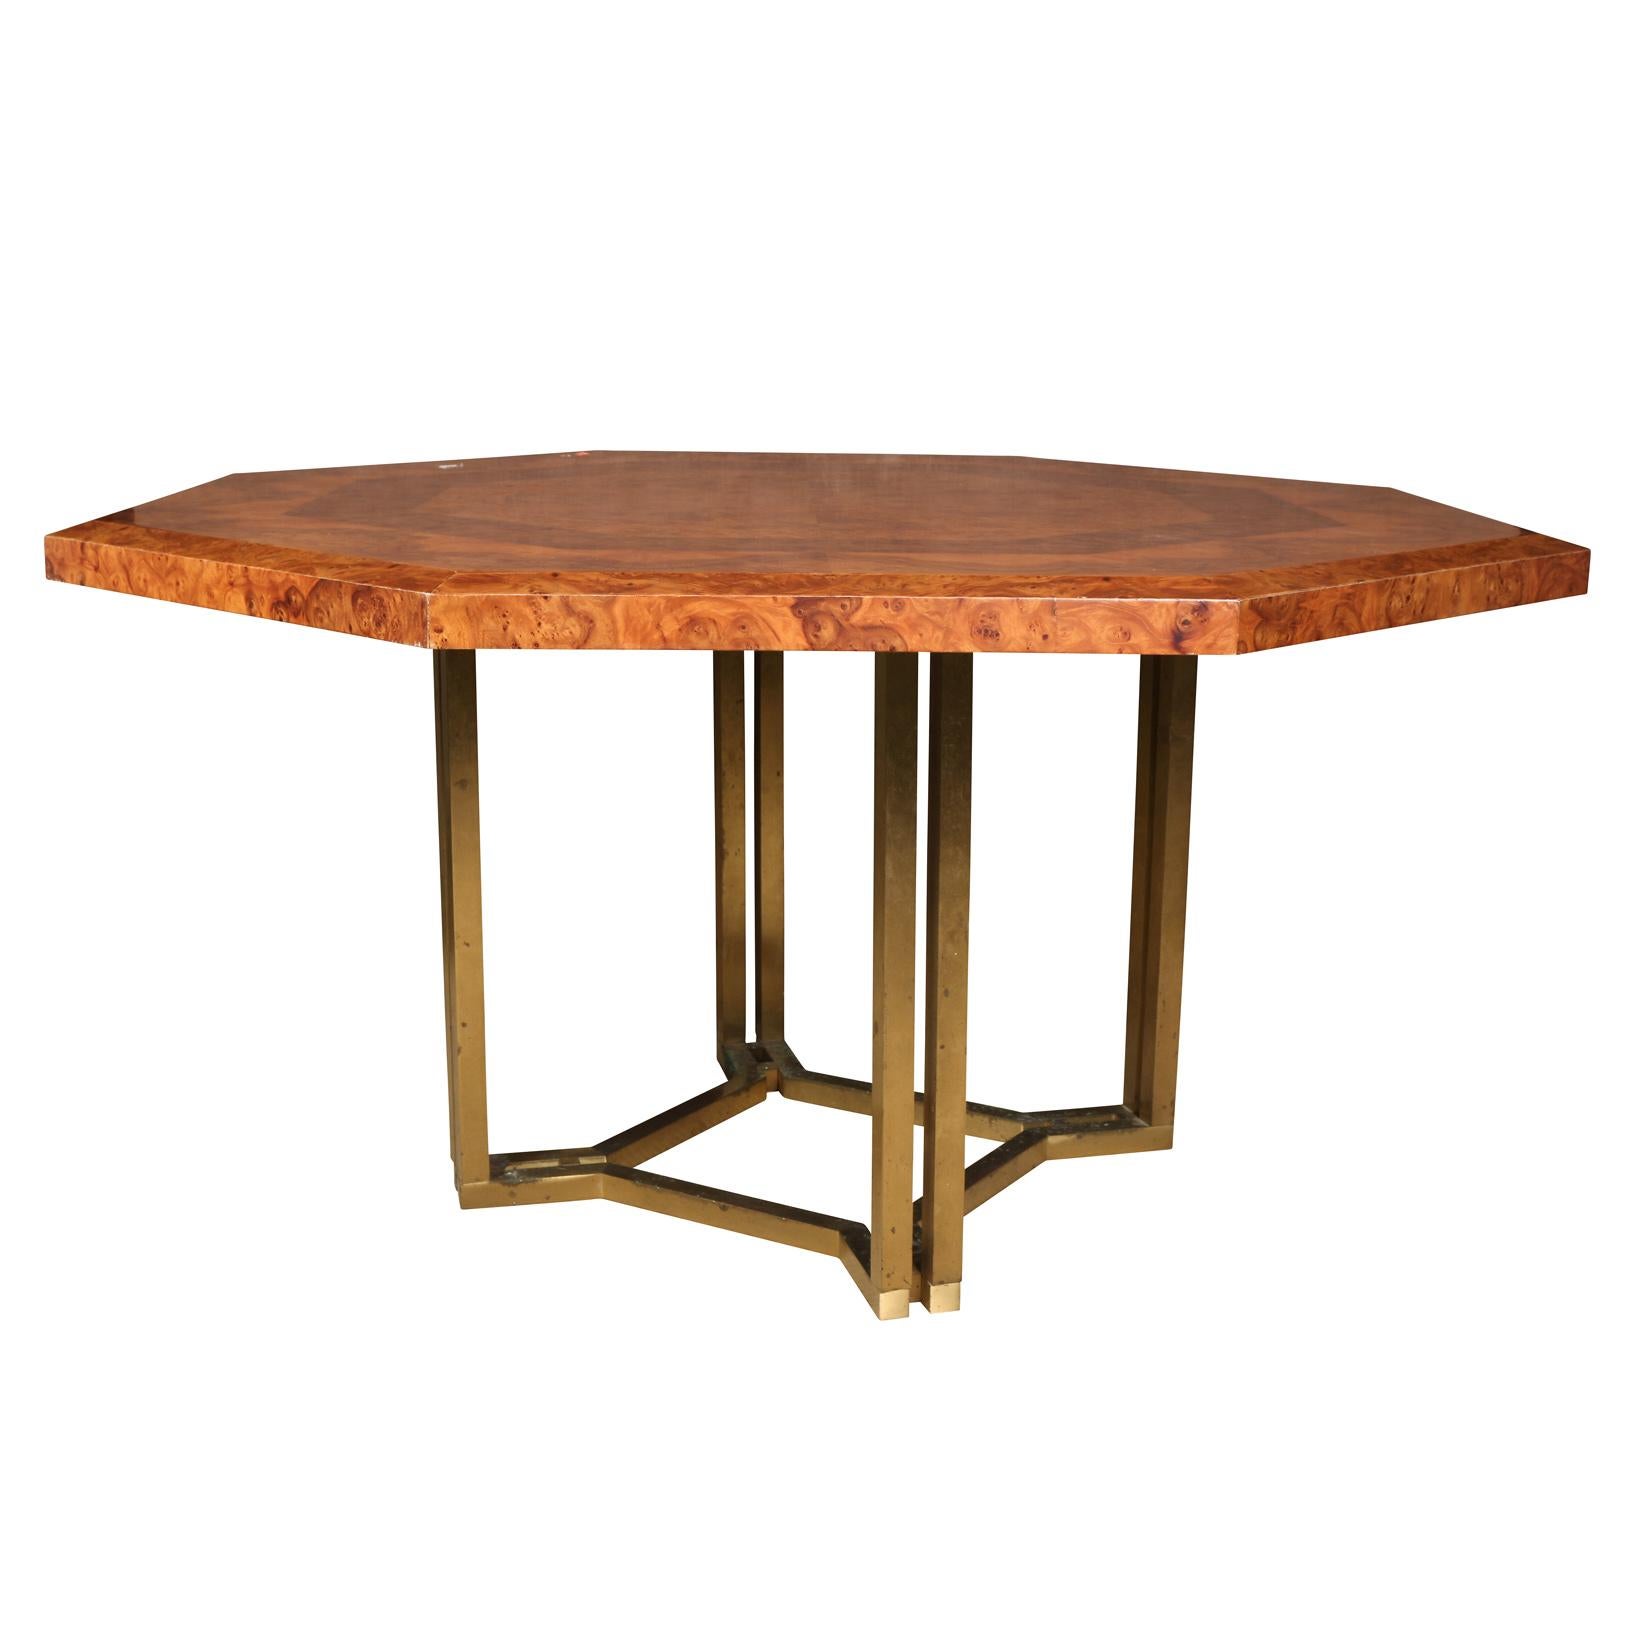 Achteckiger Vintage-Esstisch von Guy Lefevre für Maison Jansen mit vierseitigem geometrischem Messingfuß. Der Tisch hat ein geometrisches konzentrisches Muster mit einer zweifarbigen Platte aus genopptem Holz.